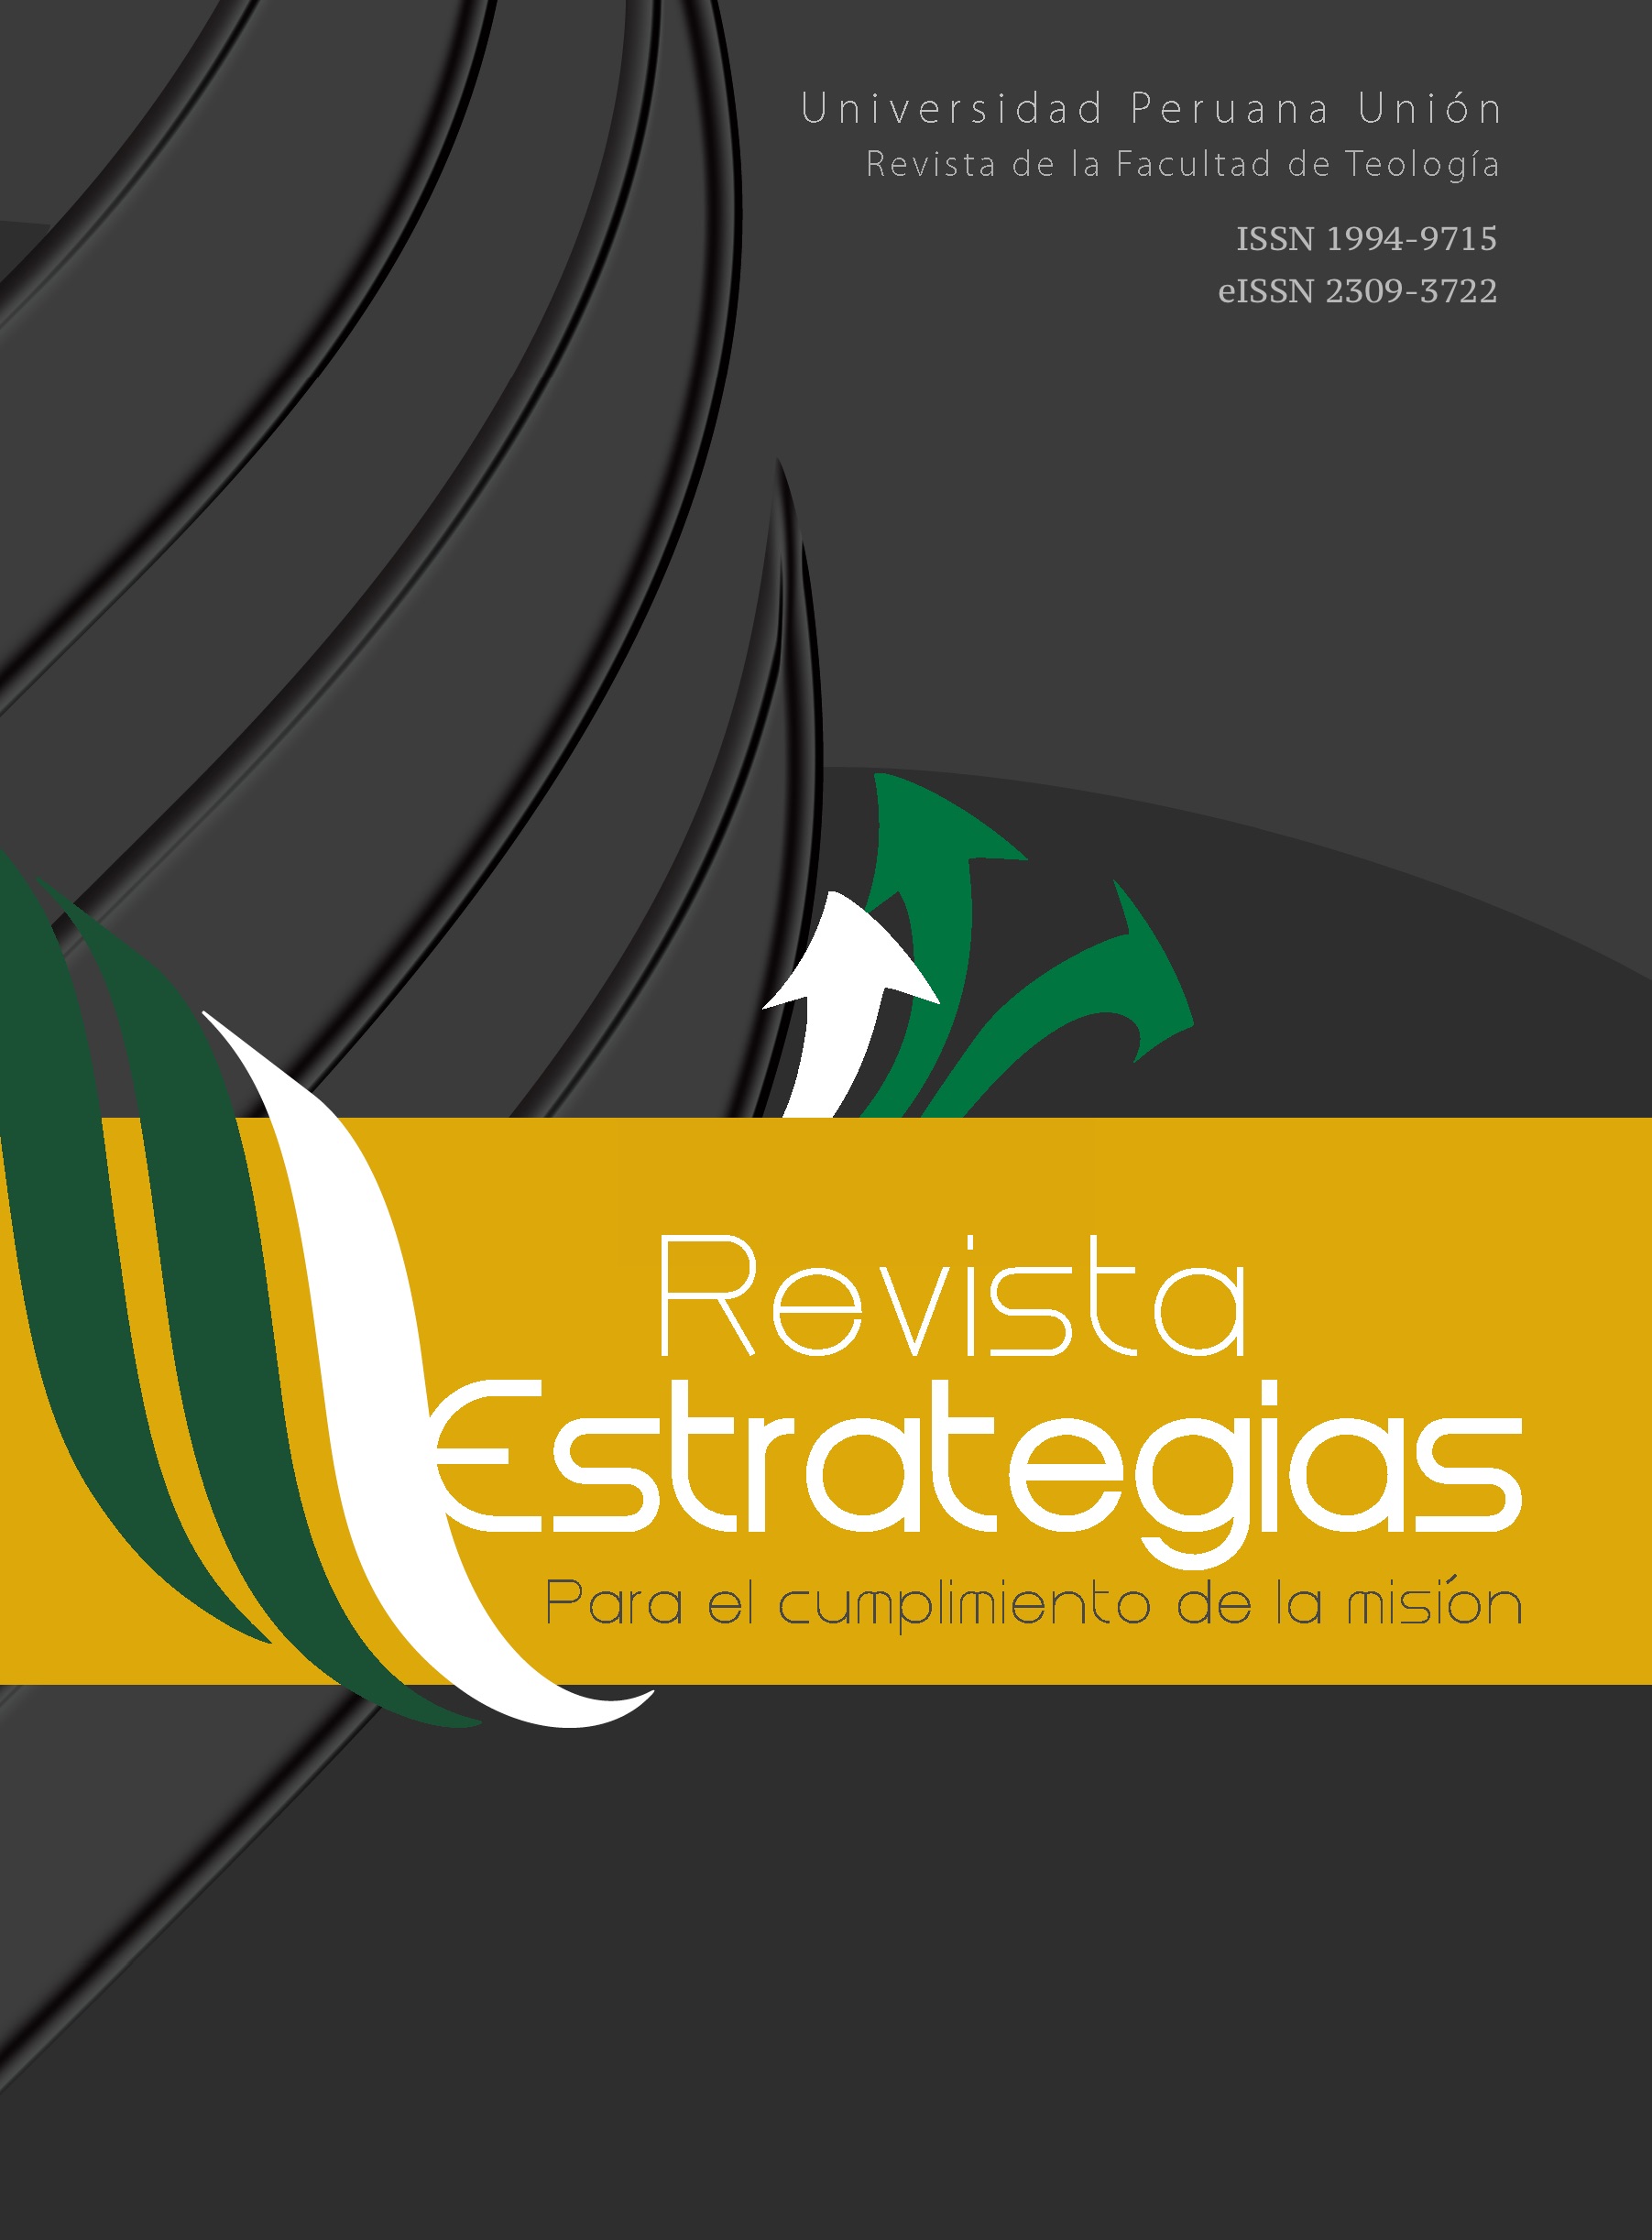 					View Vol. 17 No. 2 (2019): Revista estrategias para el cumplimiento de la misión (RECM)
				